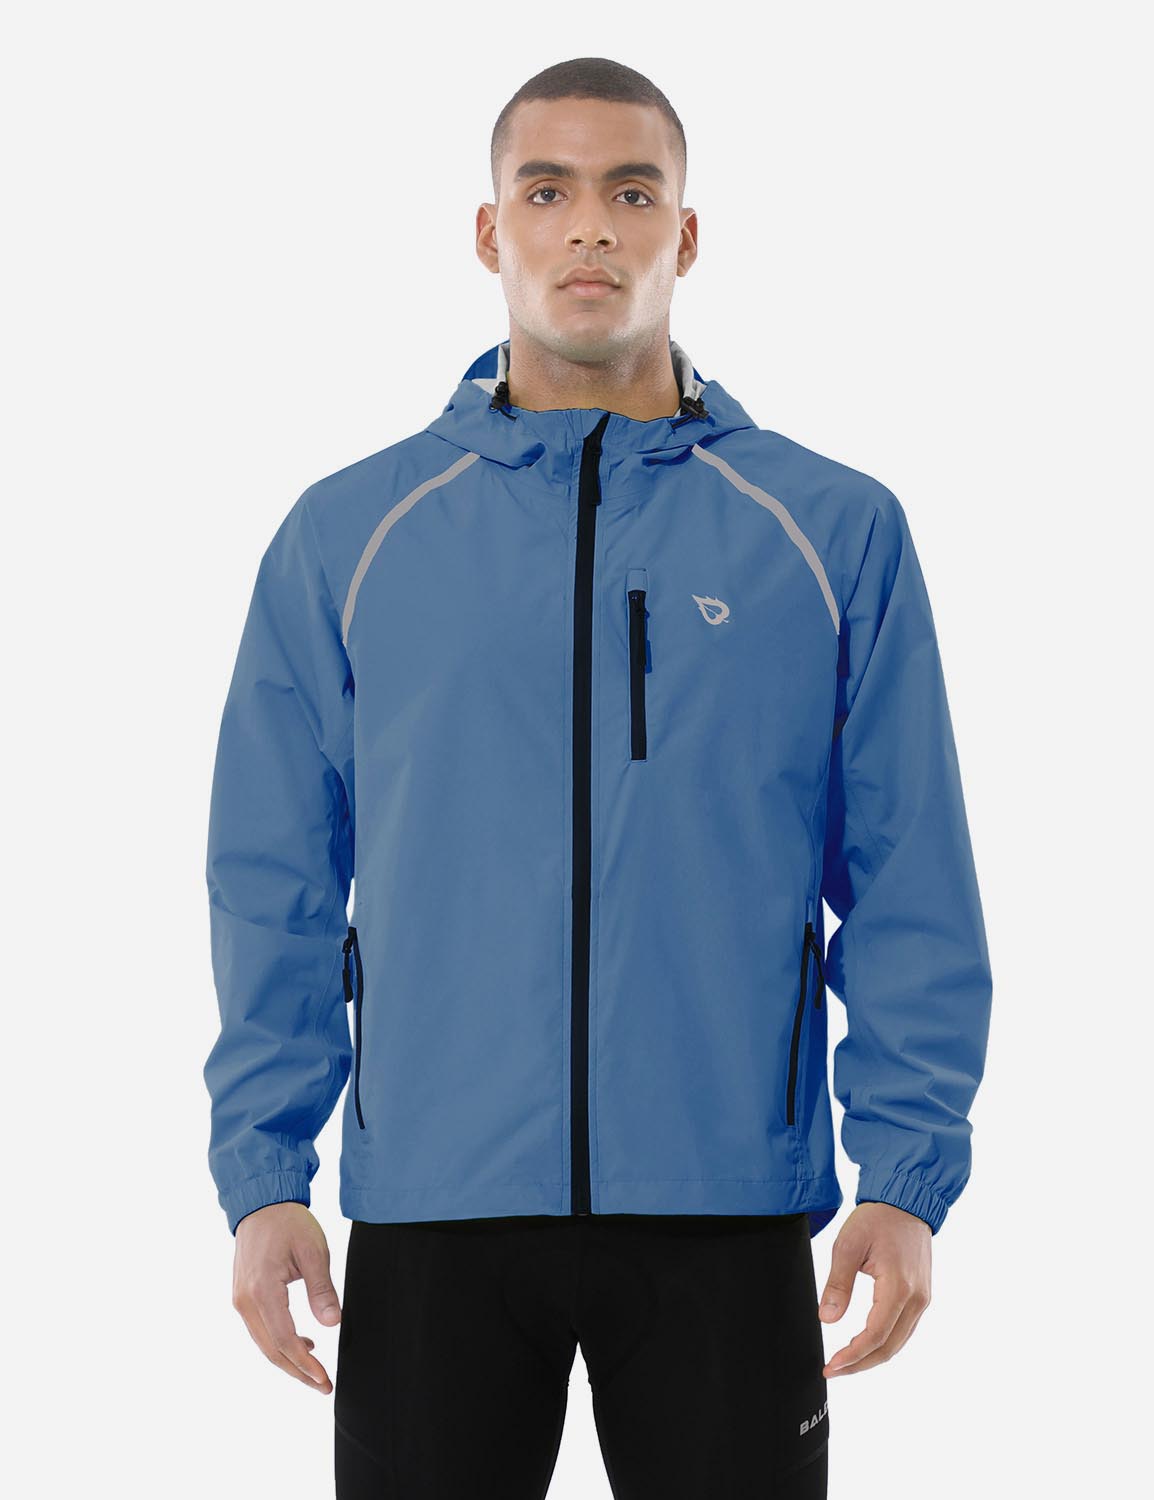 Baleaf Men's Fluorescent Waterproof Packable Windbreaker Track Jacket aaa467 Blue Front